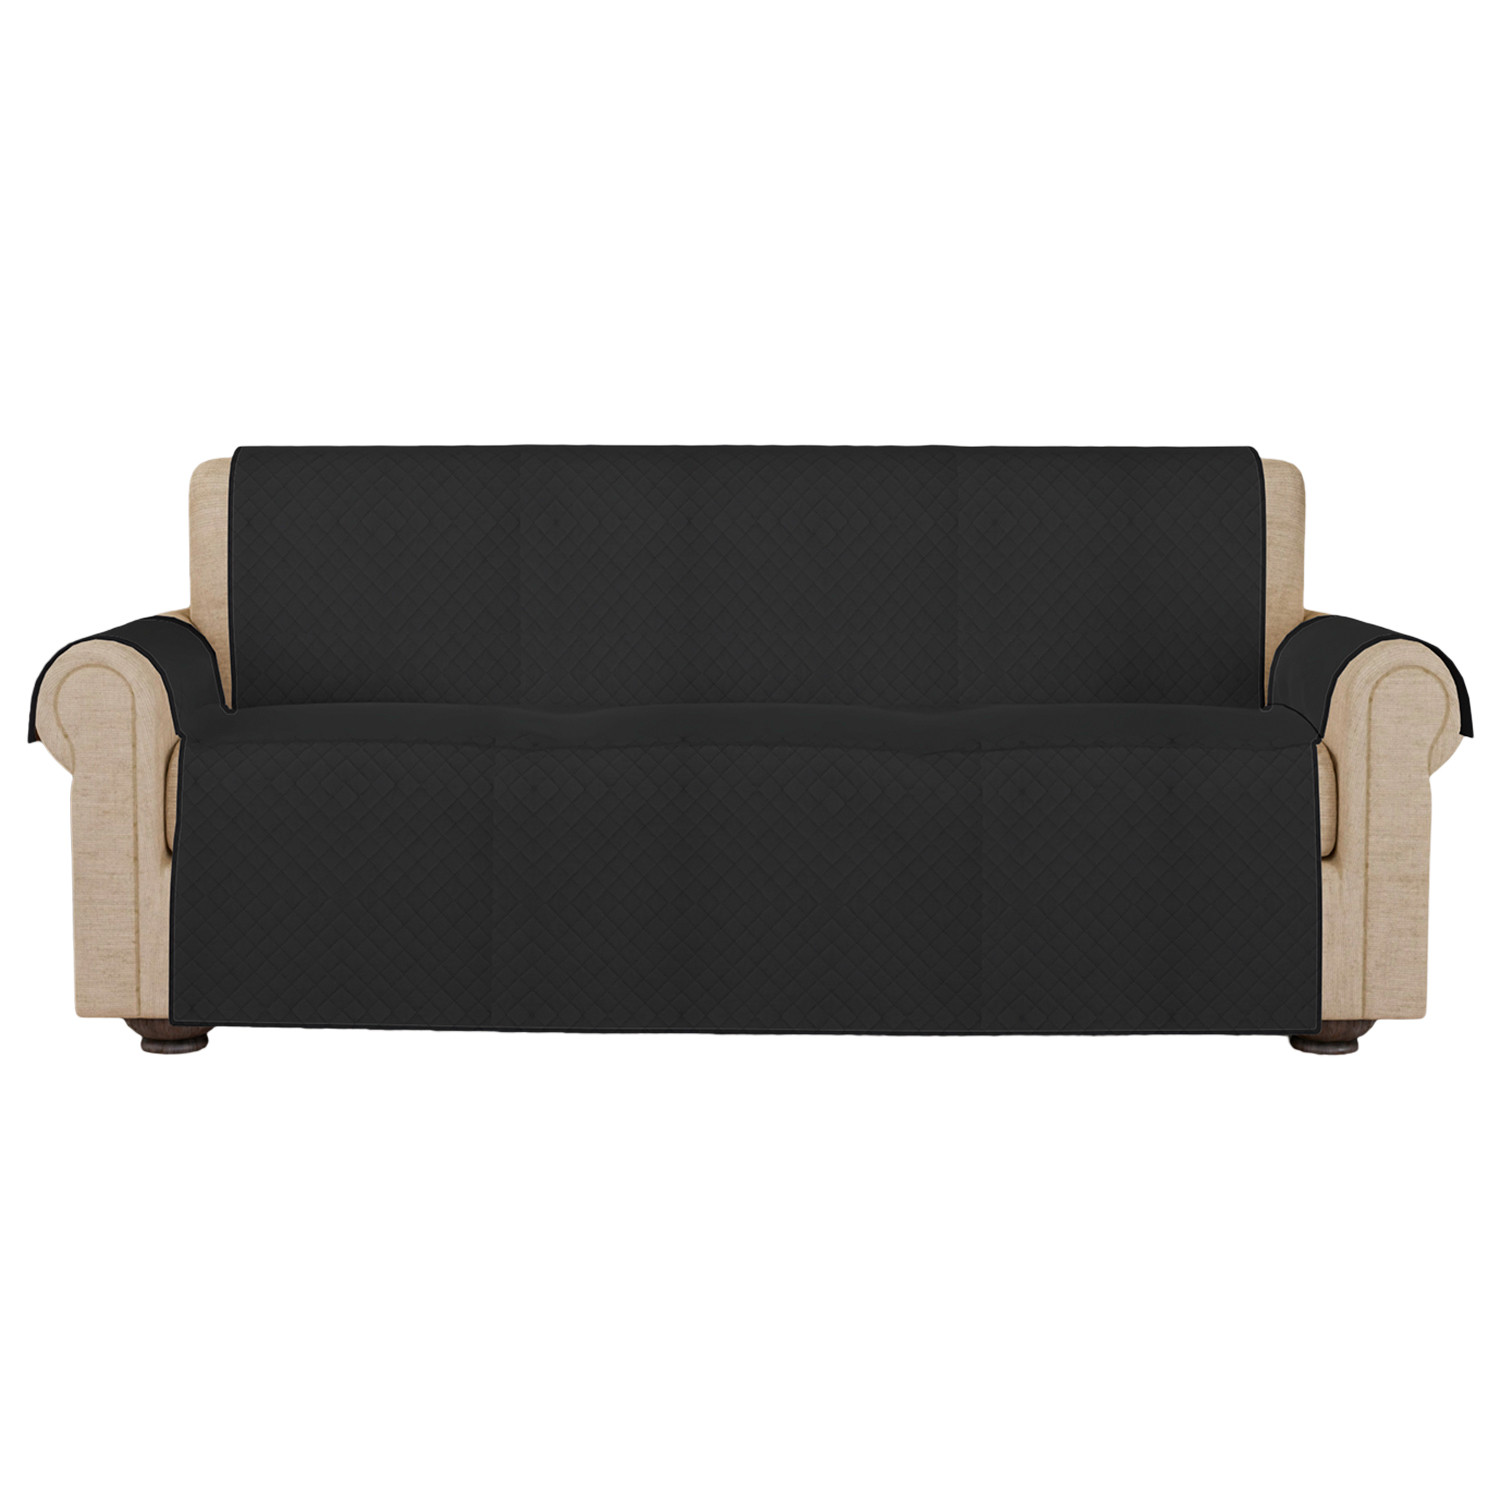 Kuber Industries Sofa Cover | Velvet Sofa Cover | 3-Seater Sofa Cover for Home Décor | 450 GSM Sofa Cover Set for Living Room | Sofa Slipcover | Couch Cover | Gray